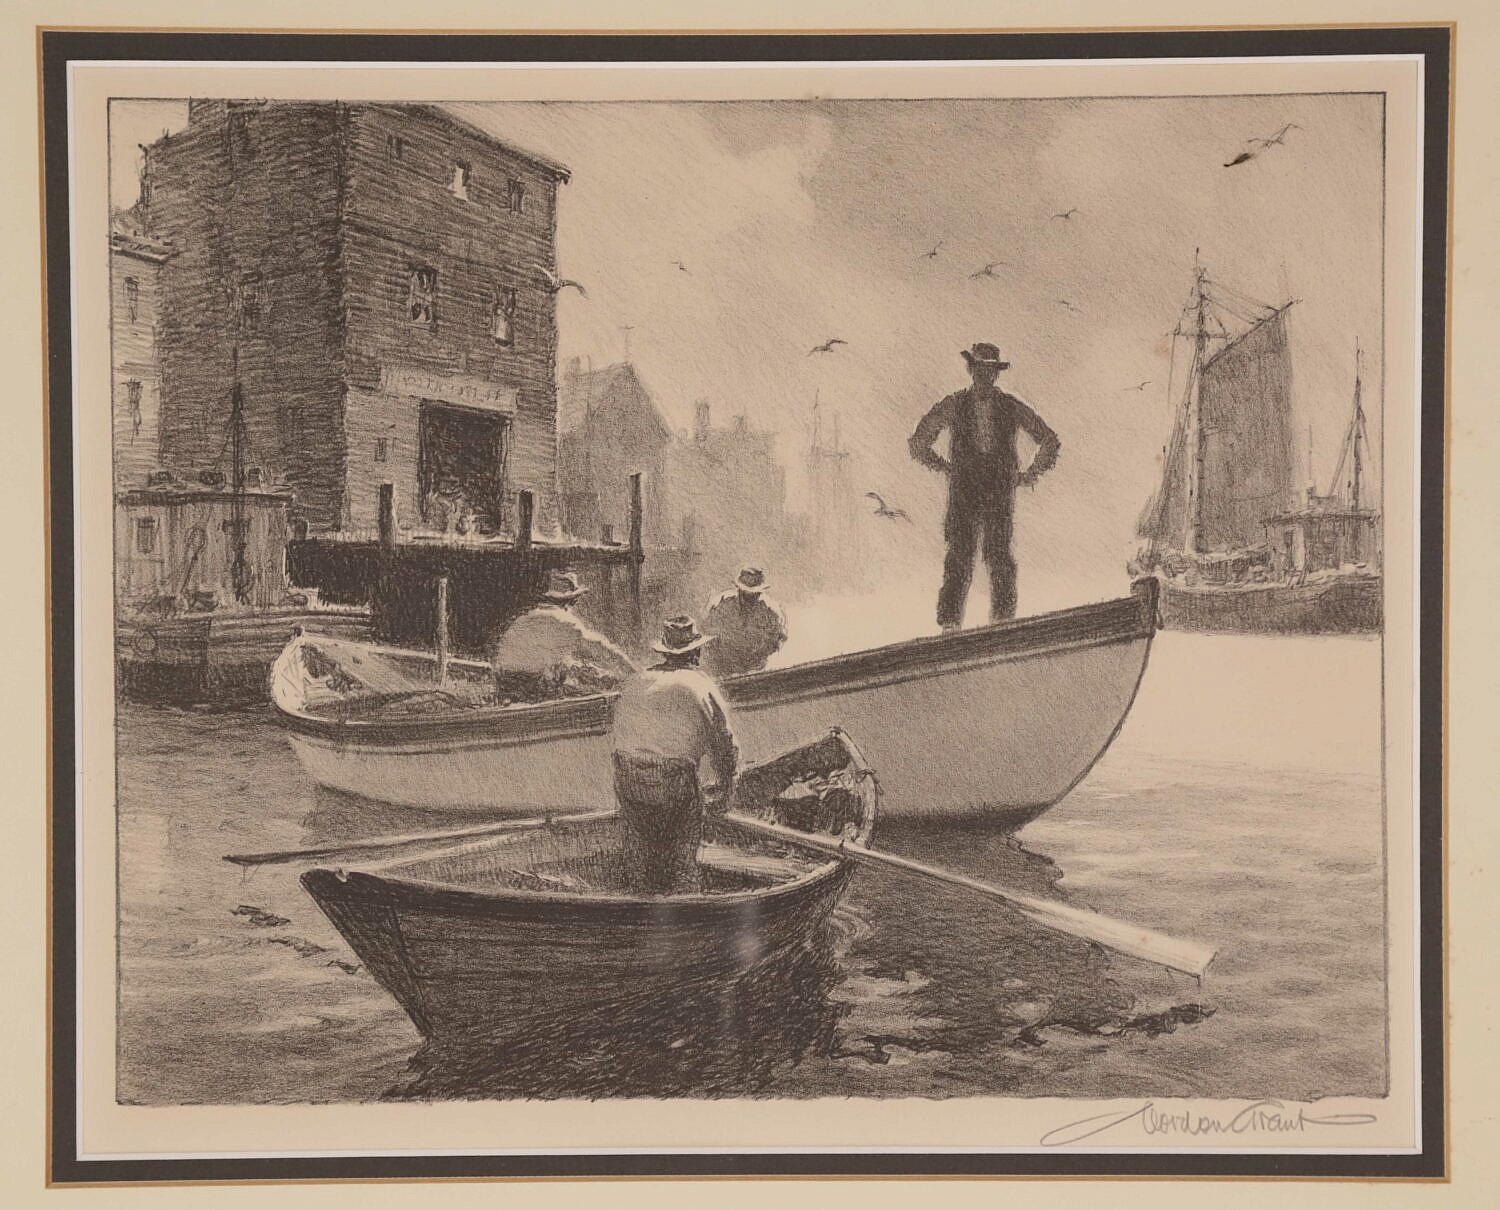 Fisherman In the Harbor - Gordon Grant